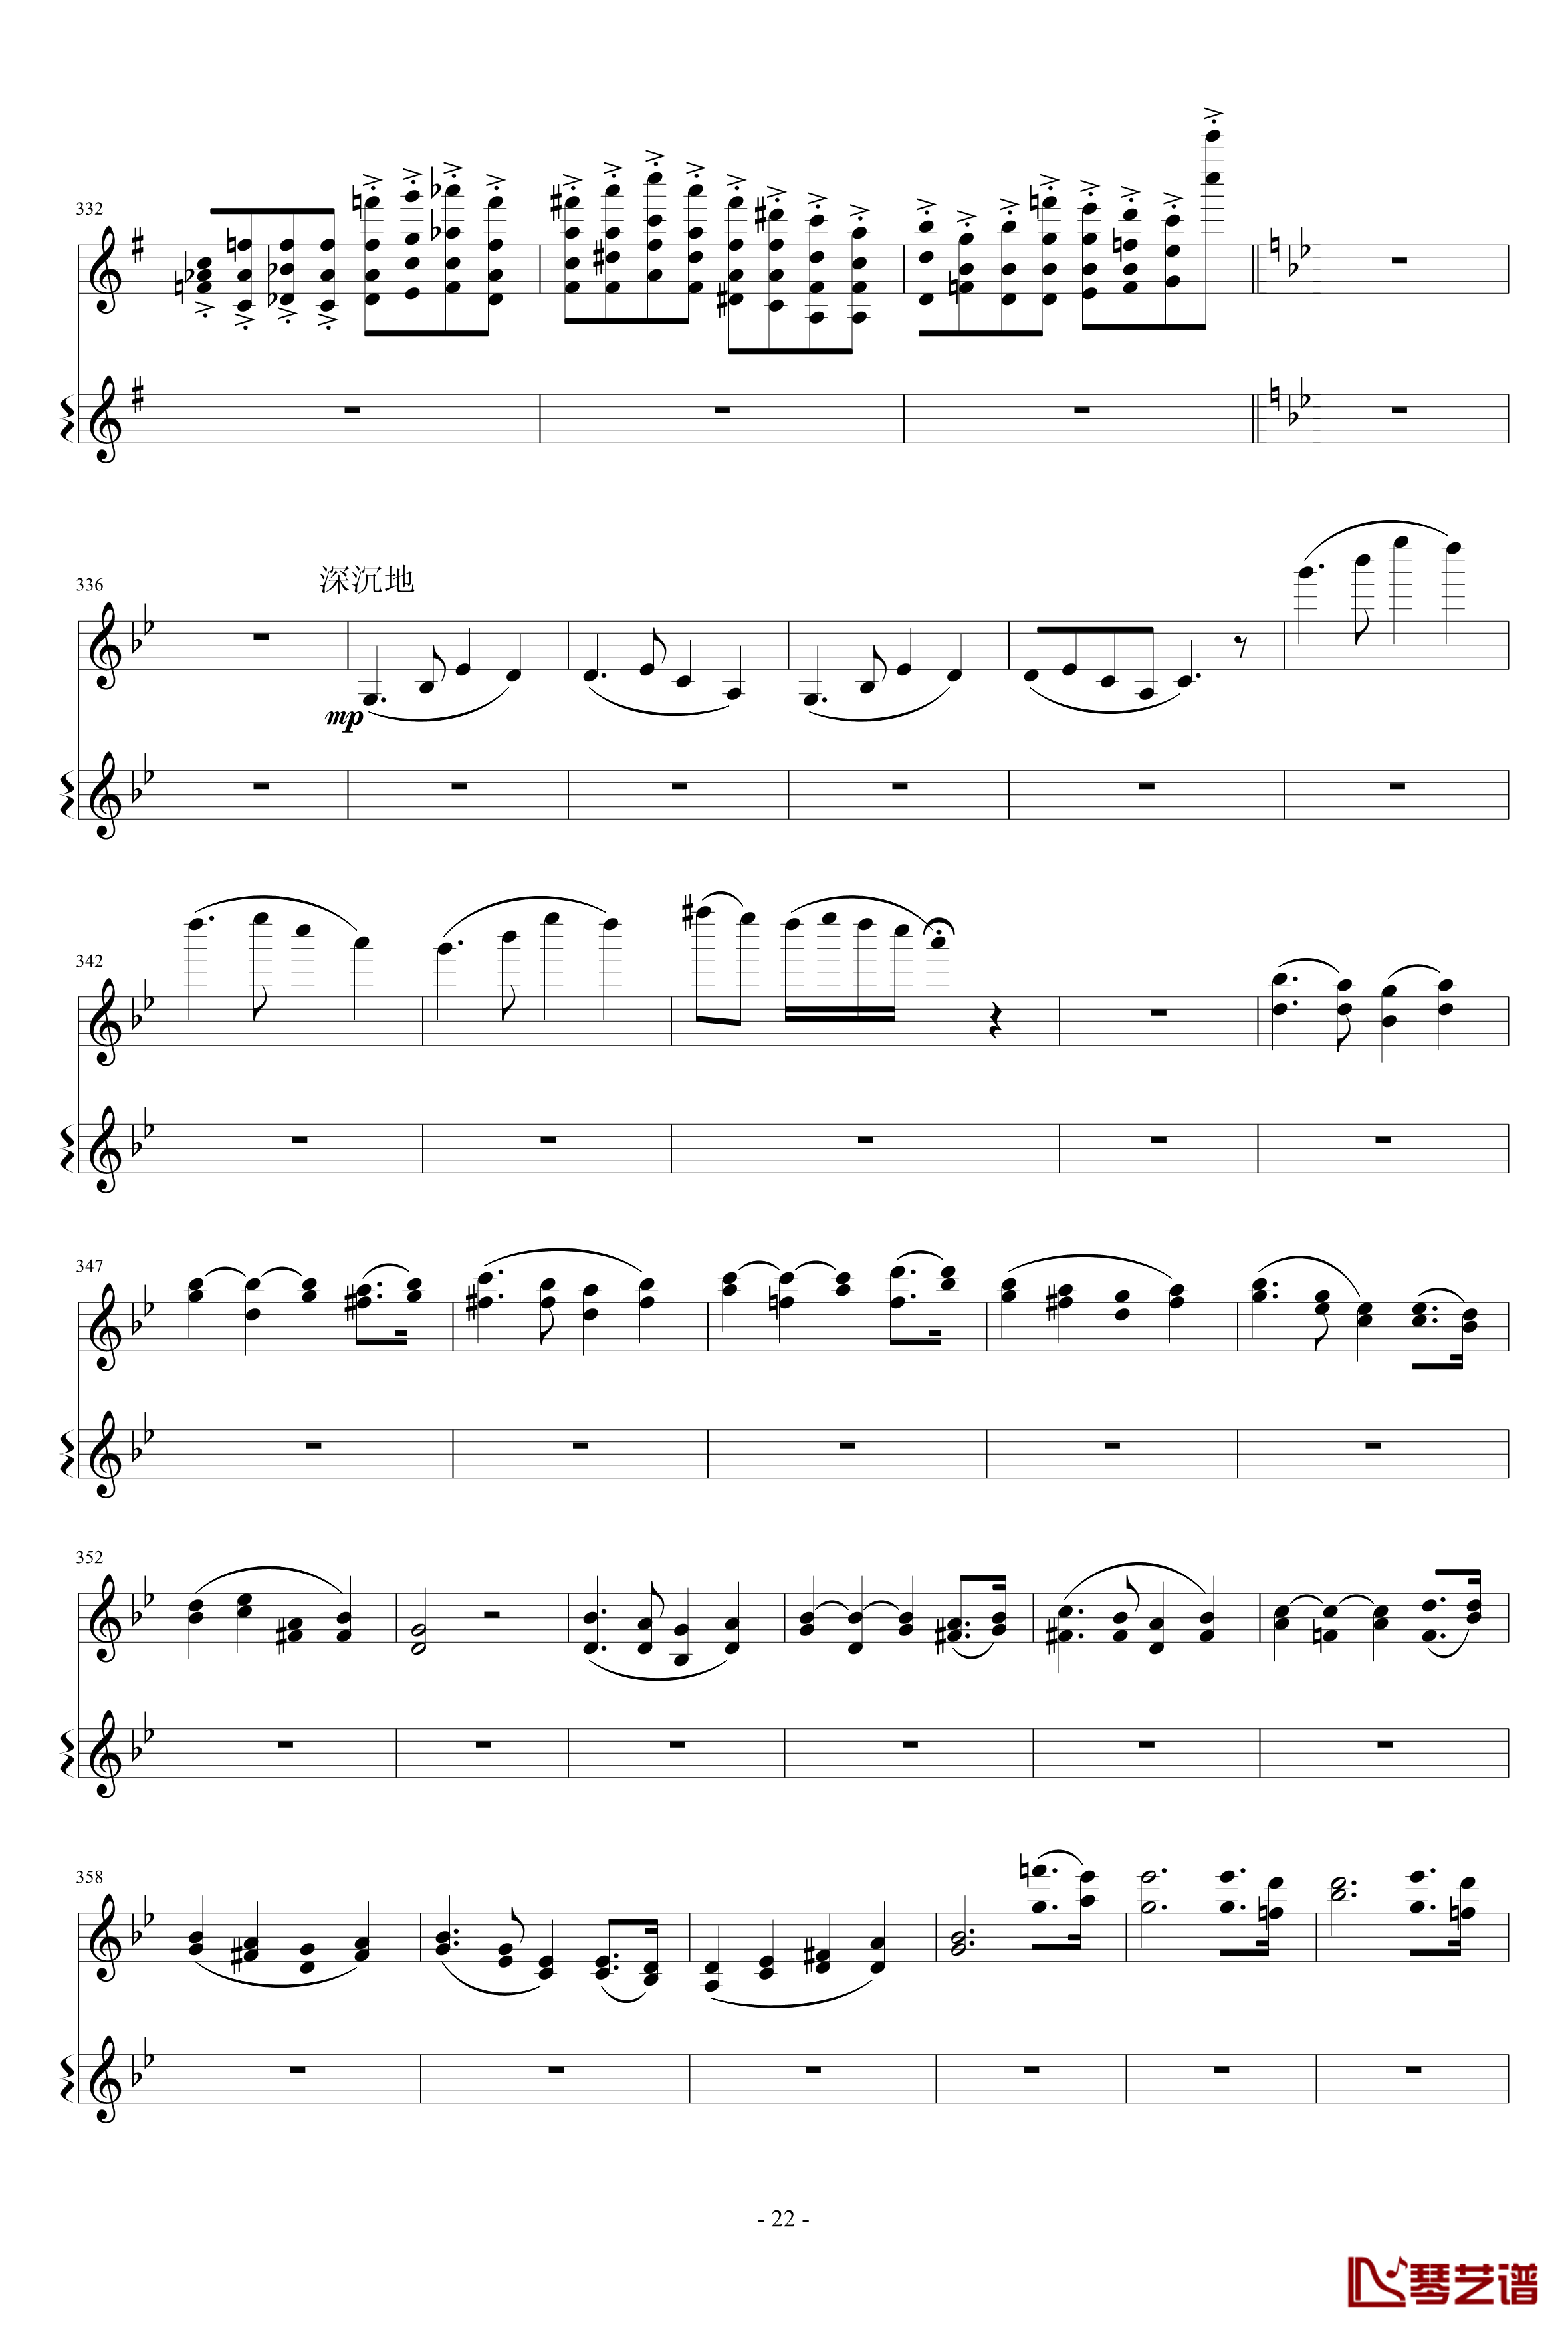 意大利国歌变奏曲钢琴谱-只修改了一个音-DXF22